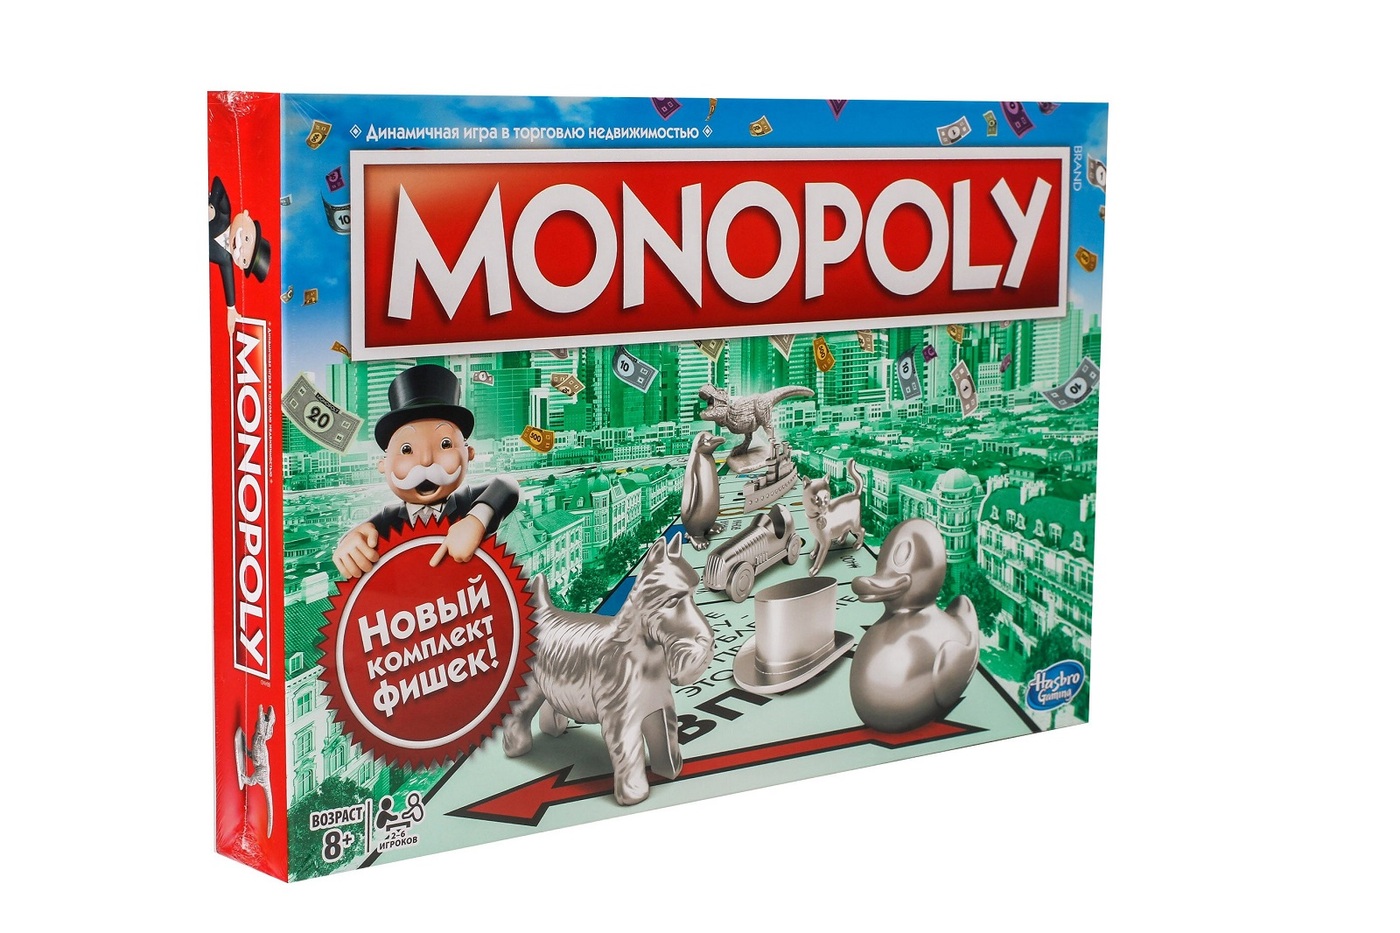 Monopoly играть. Настольная игра Monopoly классическая обновленная c1009. Настольная игра Hasbro Monopoly. Монополия классическая Хасбро. Монополия классическая обновленная c1009121.